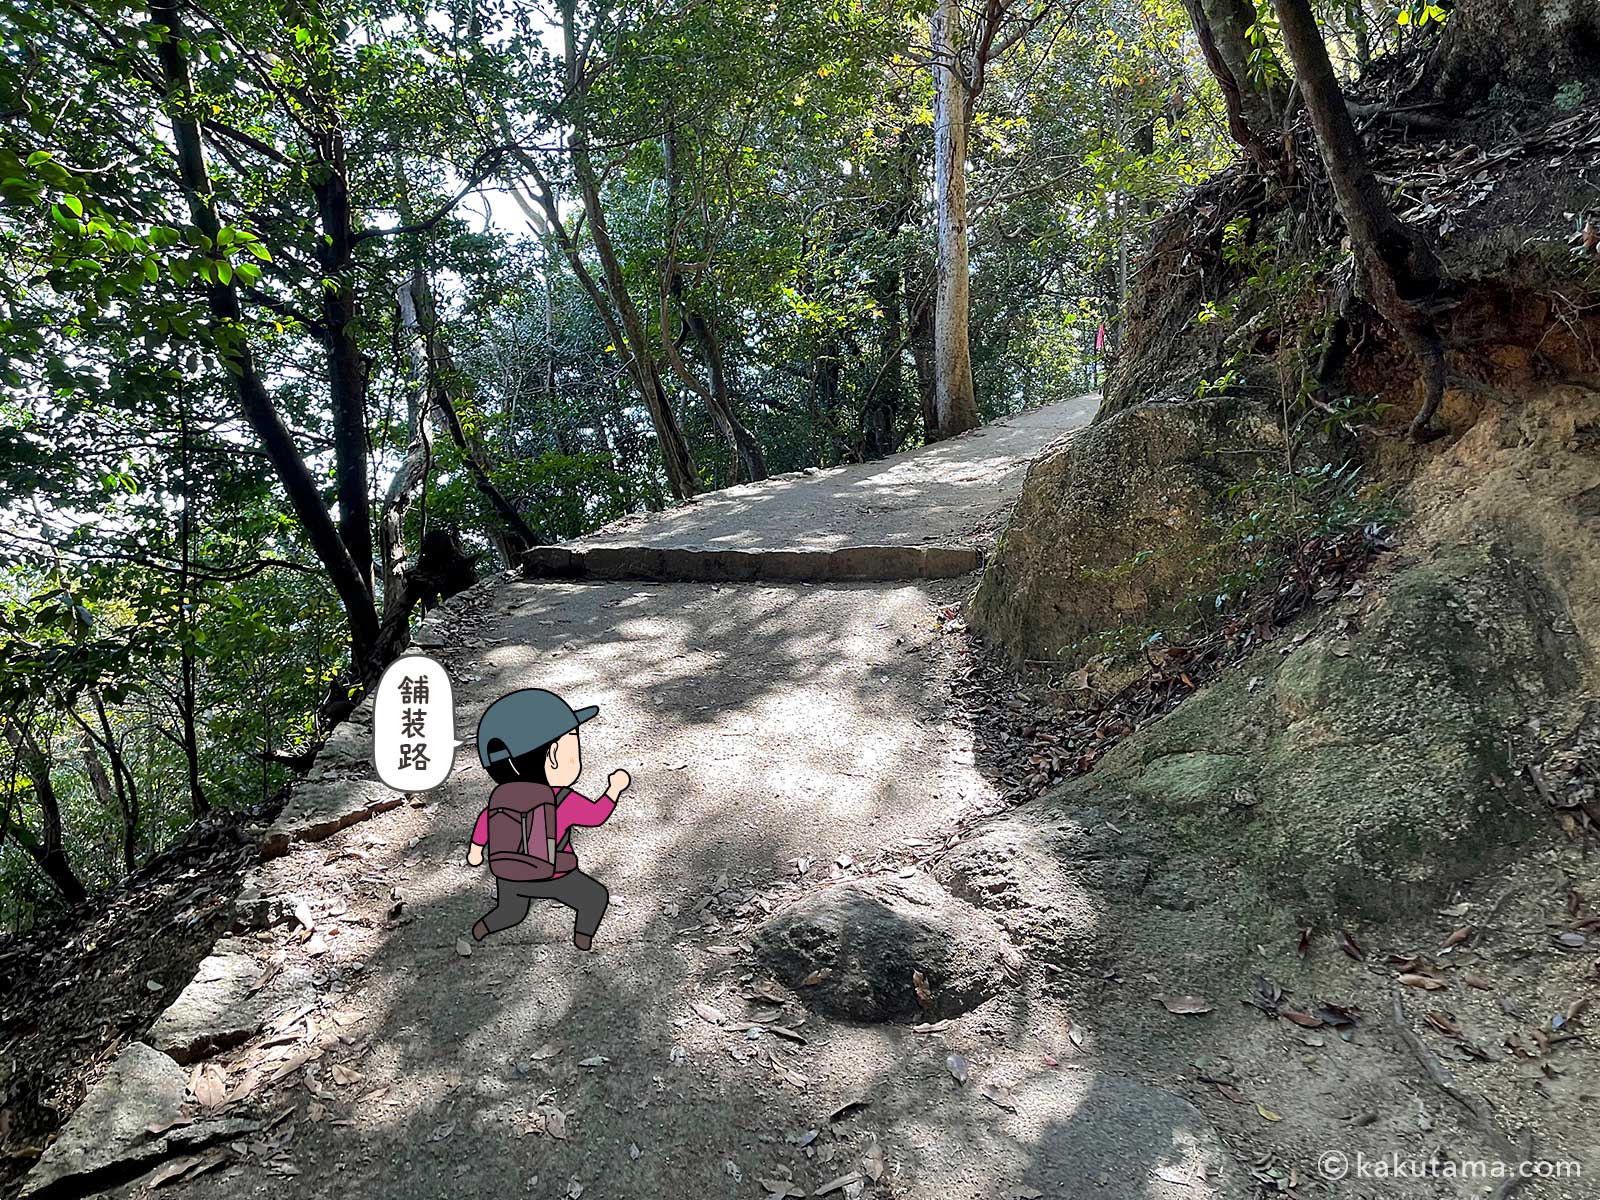 弥山登山道紅葉道コース分れから弥山山頂を目指して歩き出す写真と登山者のイラスト2